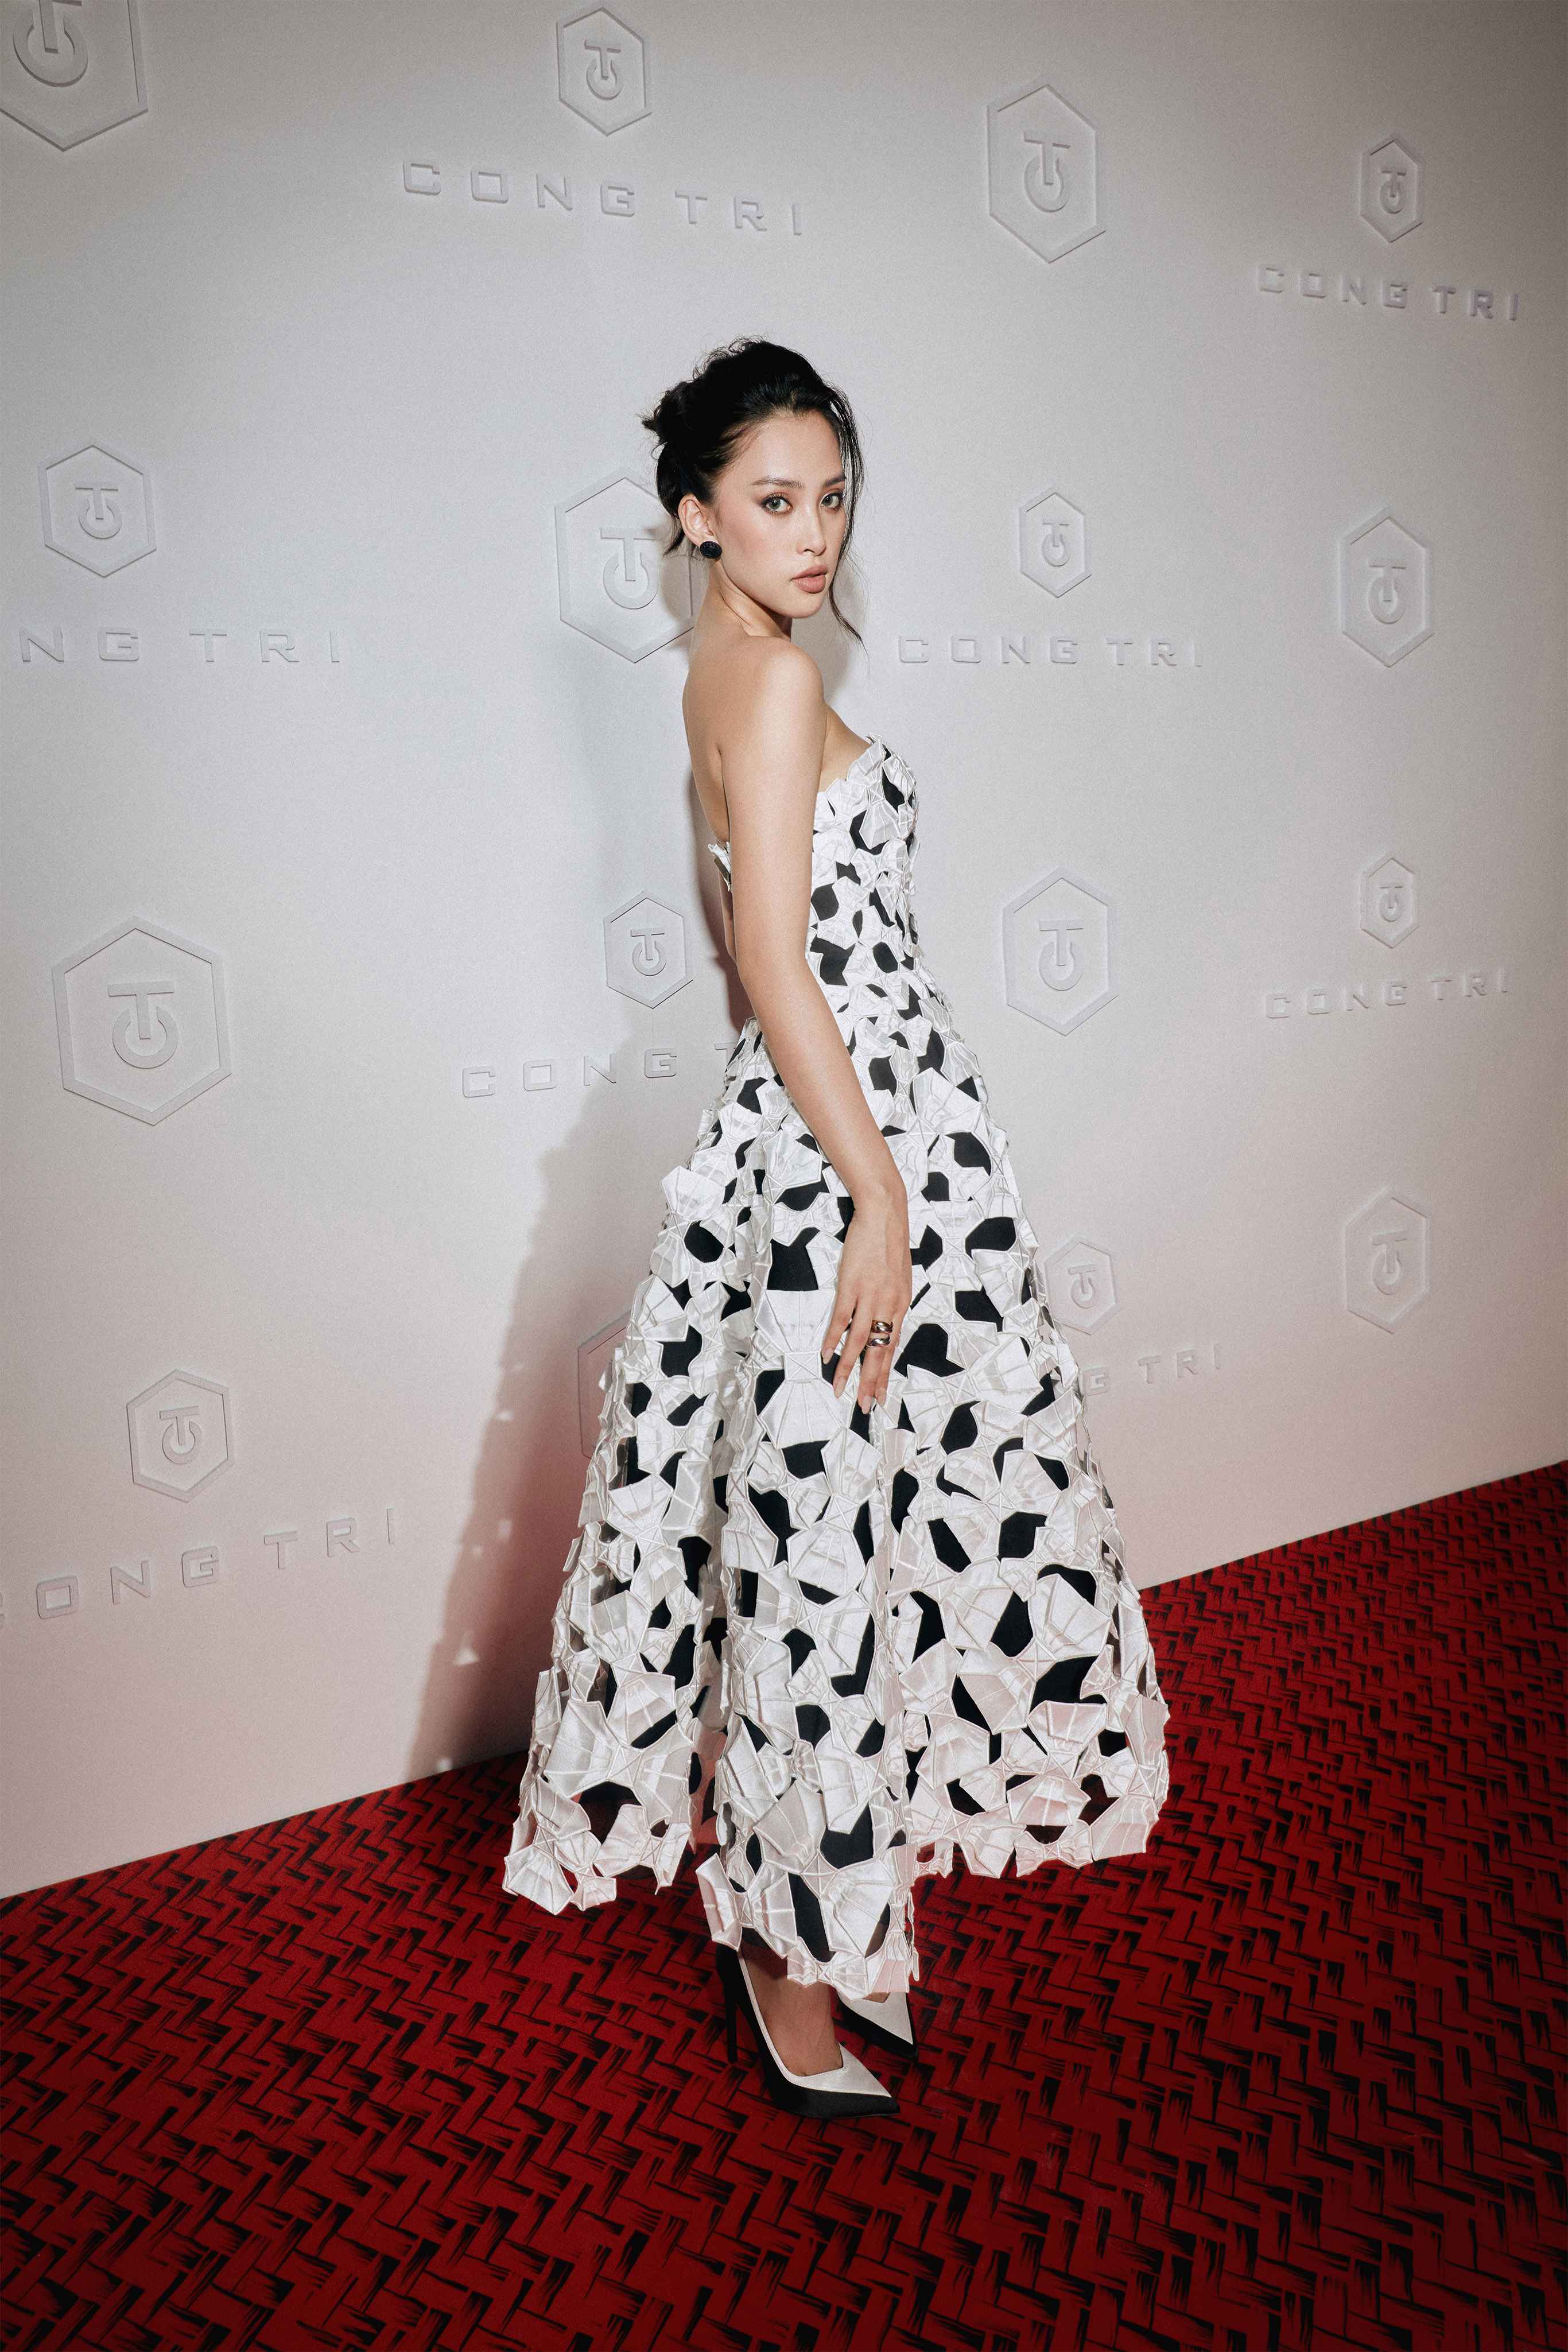 Hoa hậu Tiểu Vy, Lương Thùy Linh xuất hiện trên tạp chí Vogue Mỹ, thần thái khác lạ nhưng ấn tượng